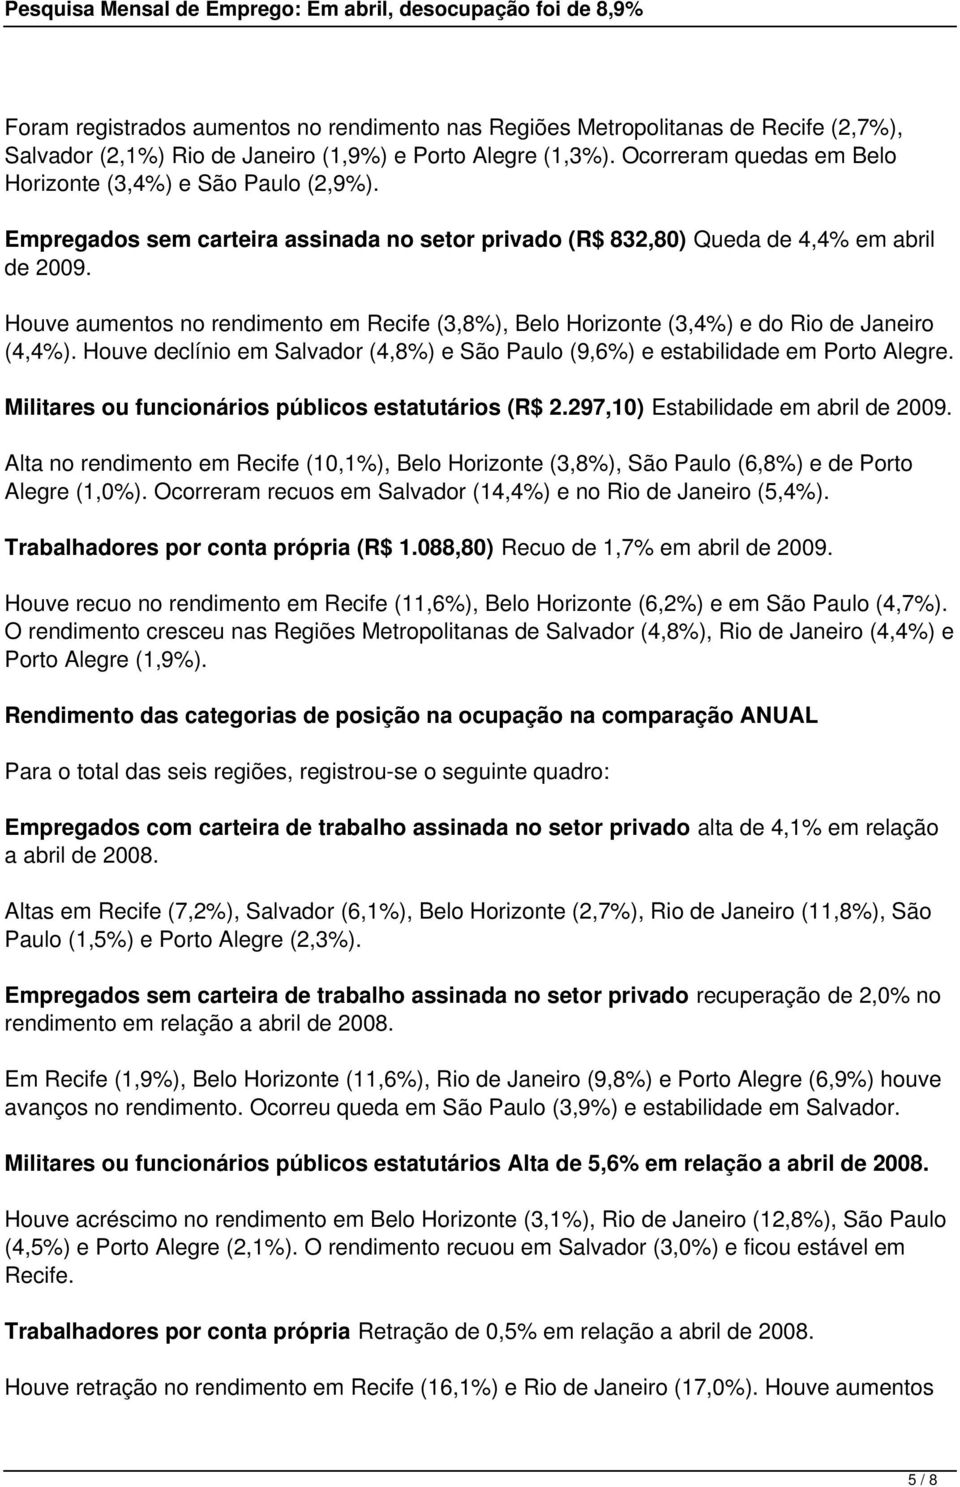 Houve aumentos no rendimento em Recife (3,8%), Belo Horizonte (3,4%) e do Rio de Janeiro (4,4%). Houve declínio em Salvador (4,8%) e São Paulo (9,6%) e estabilidade em Porto Alegre.